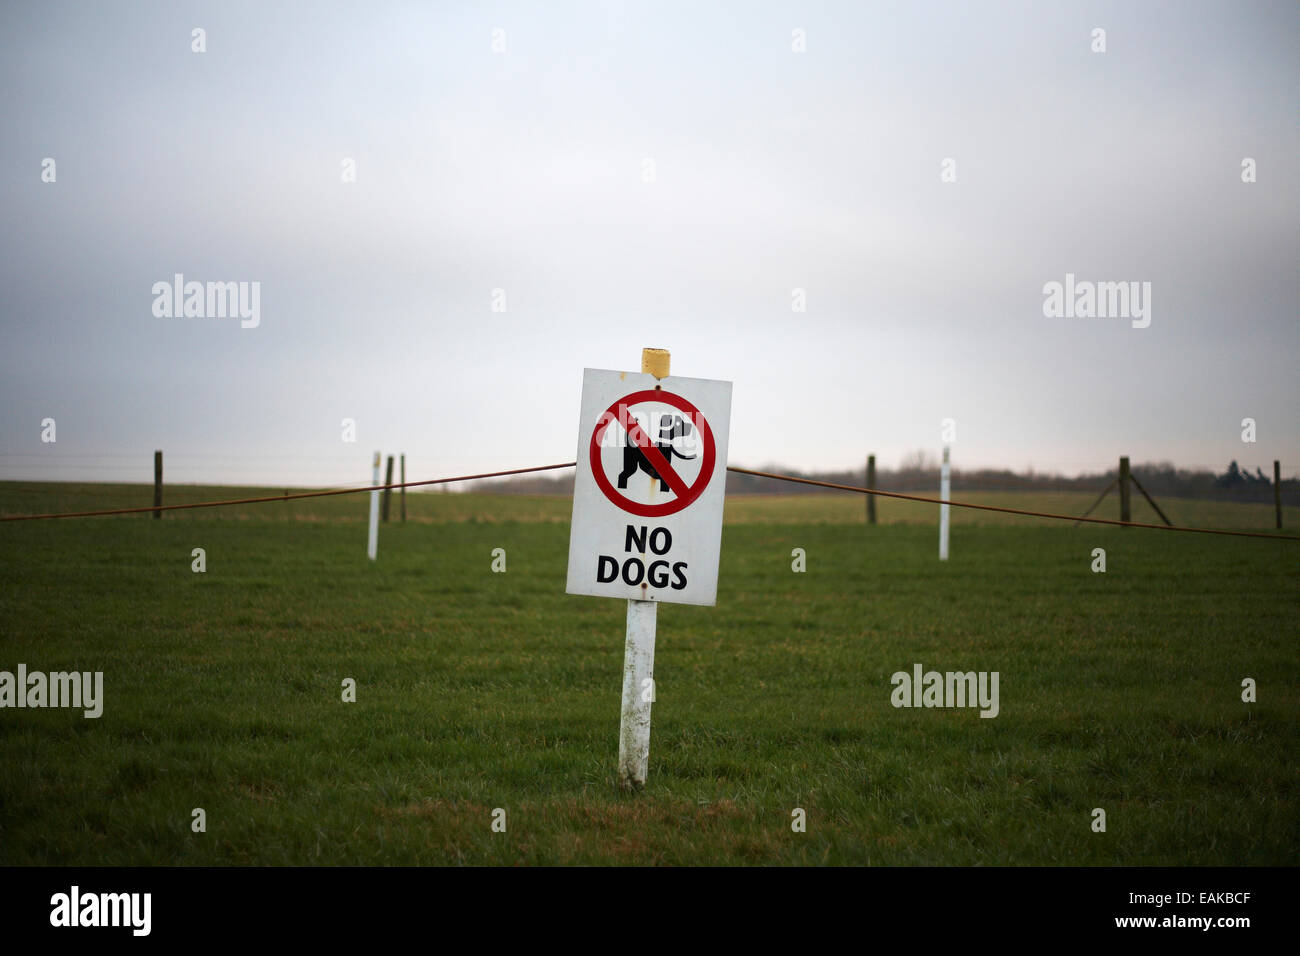 Keine Hunde-Zeichen in einem Feld, Reiseziel, park Stockfoto